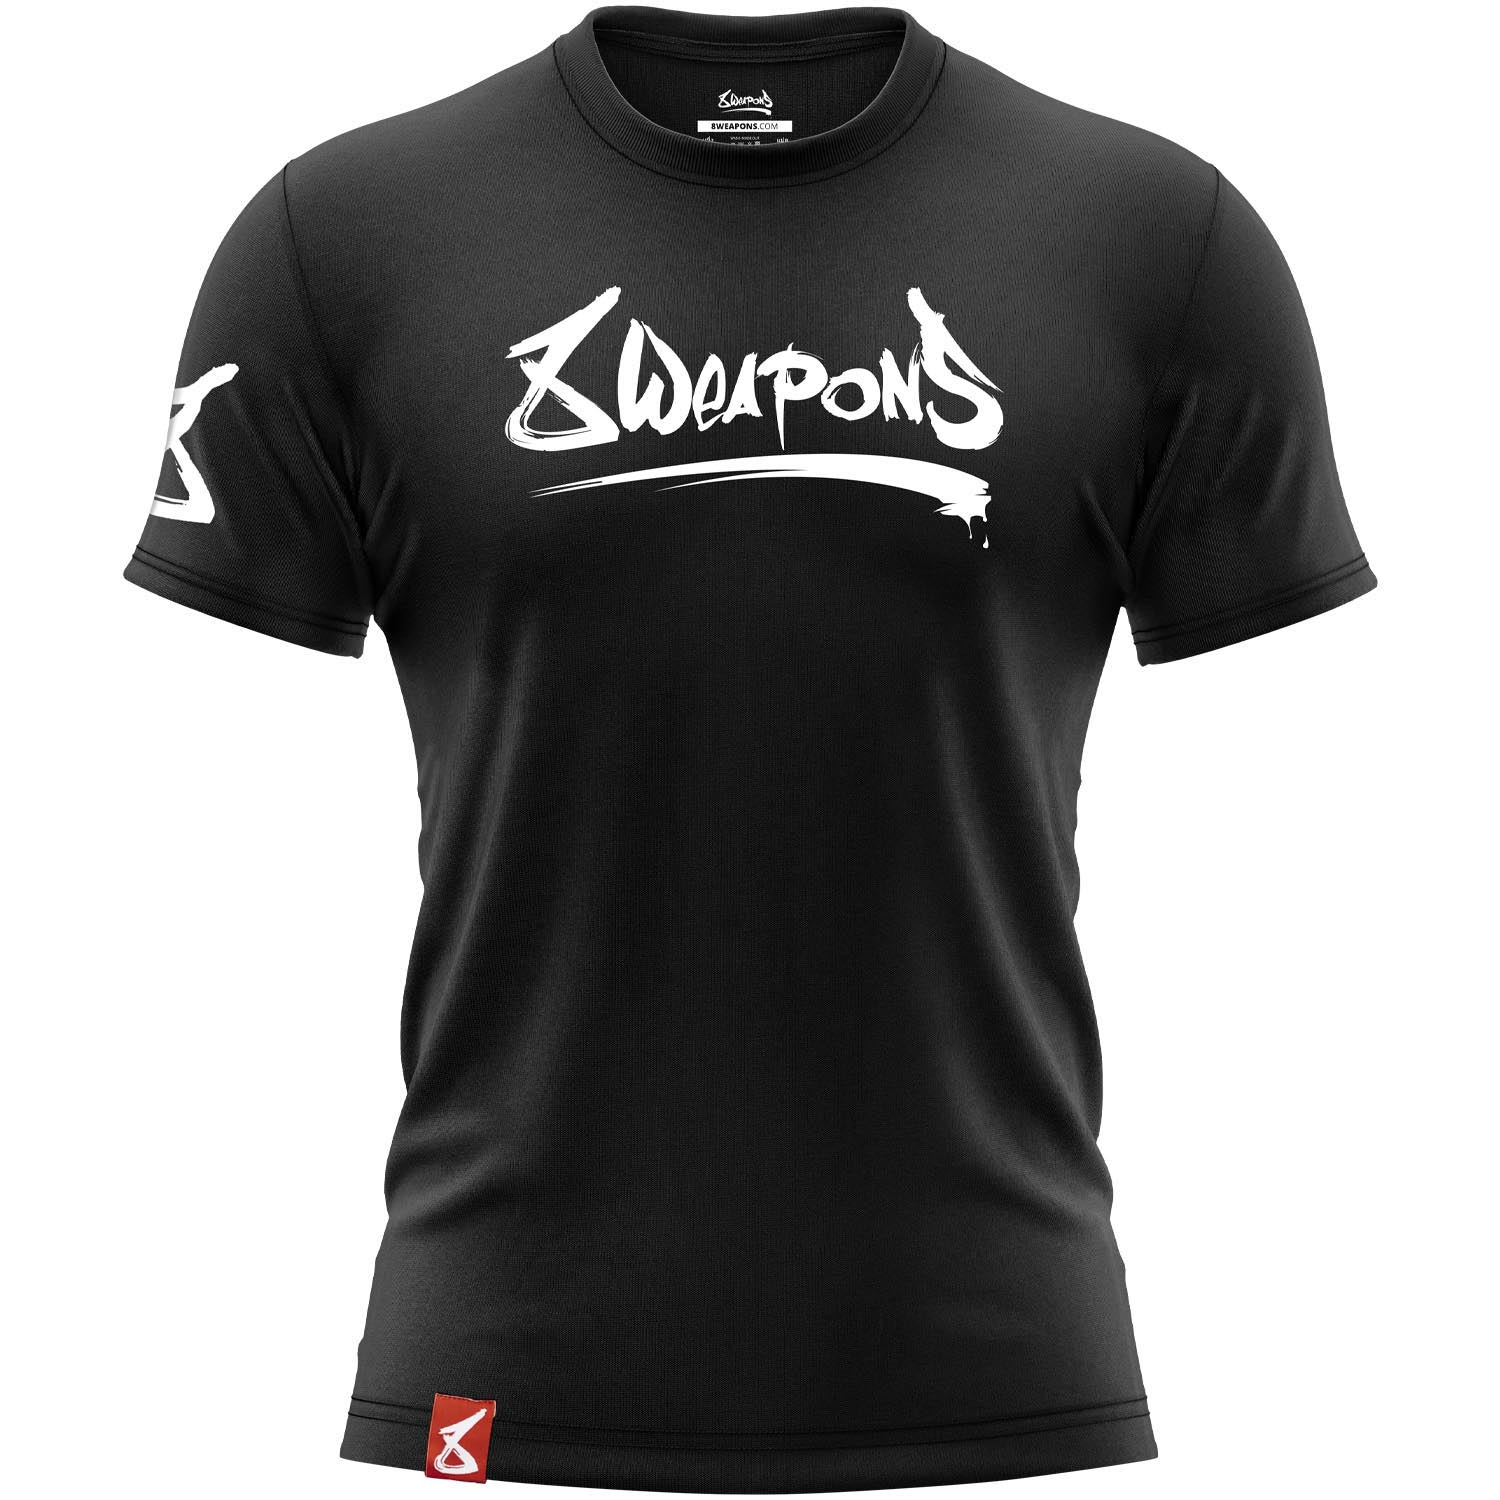 8 WEAPONS T-Shirt, Unlimited 2.0, schwarz-weiß